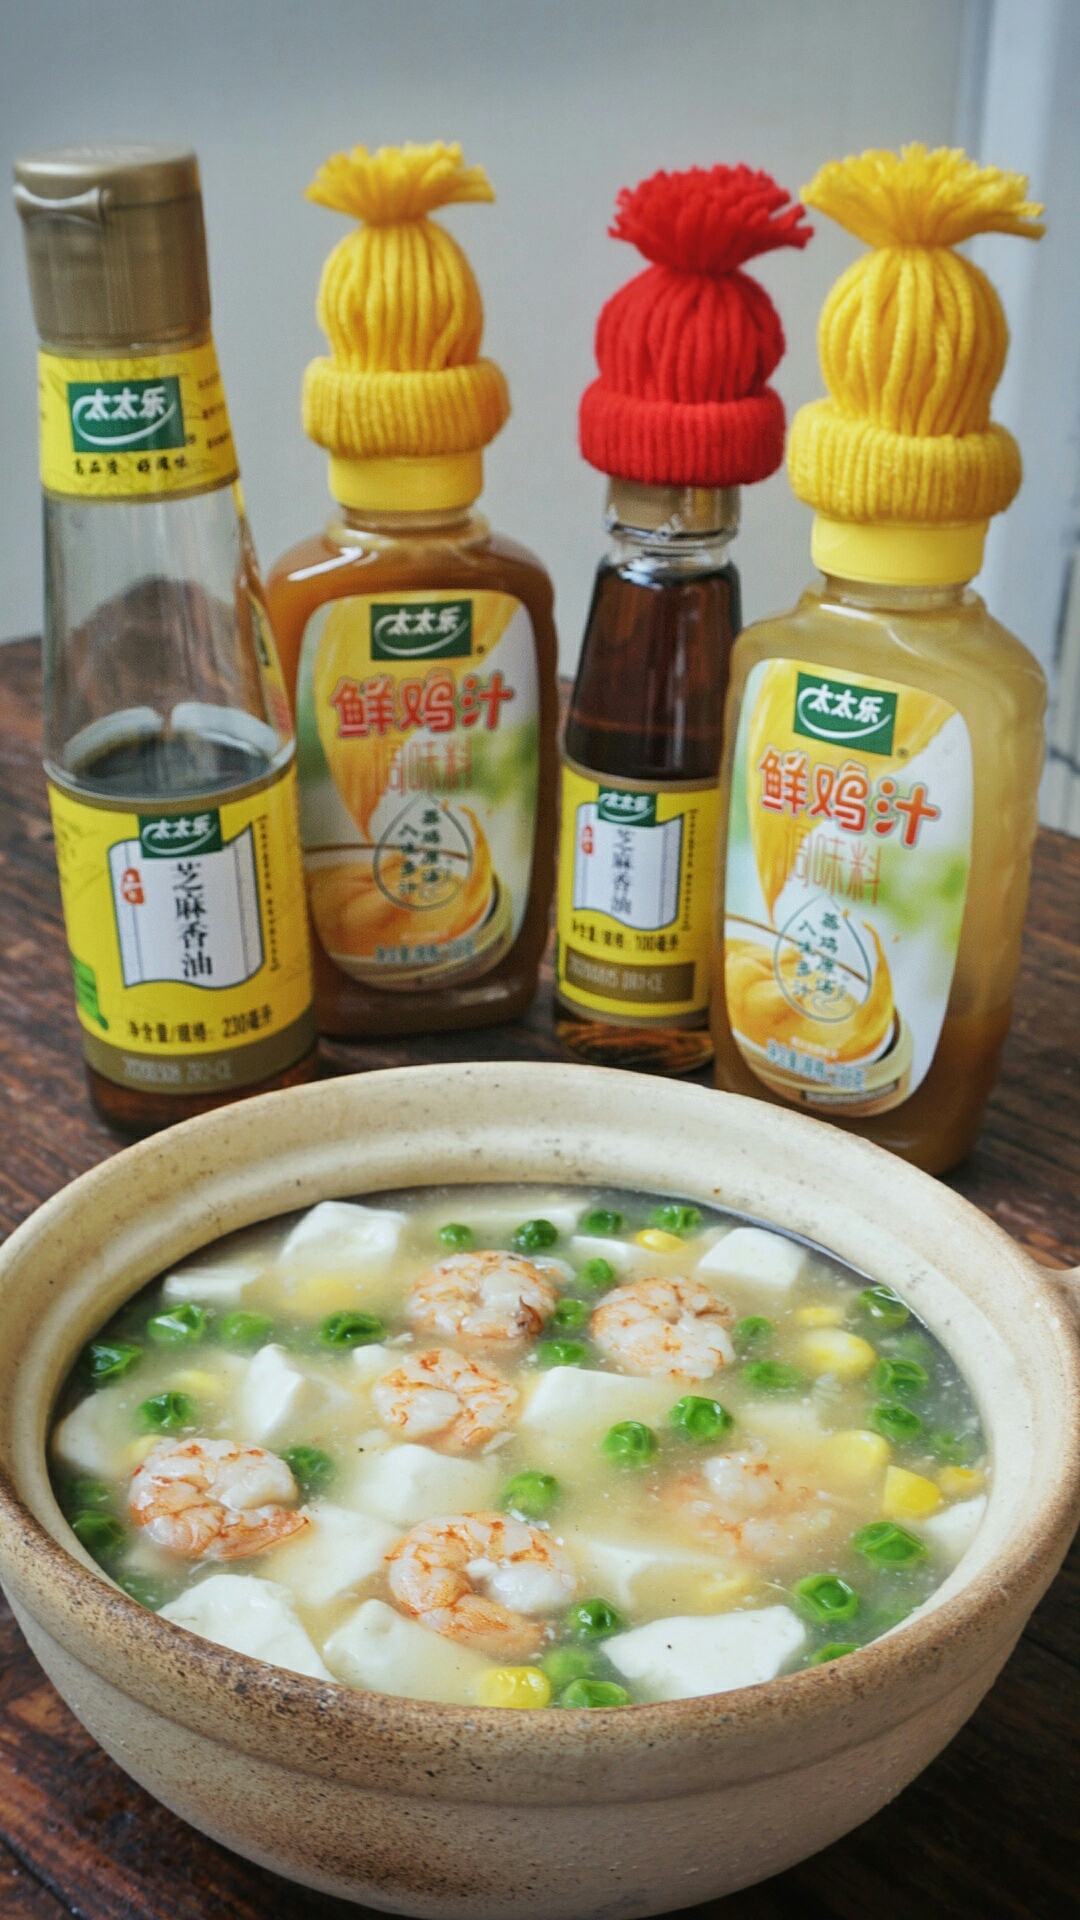 日式鲜虾时蔬豆腐煲+太太乐鲜鸡汁芝麻香油的做法